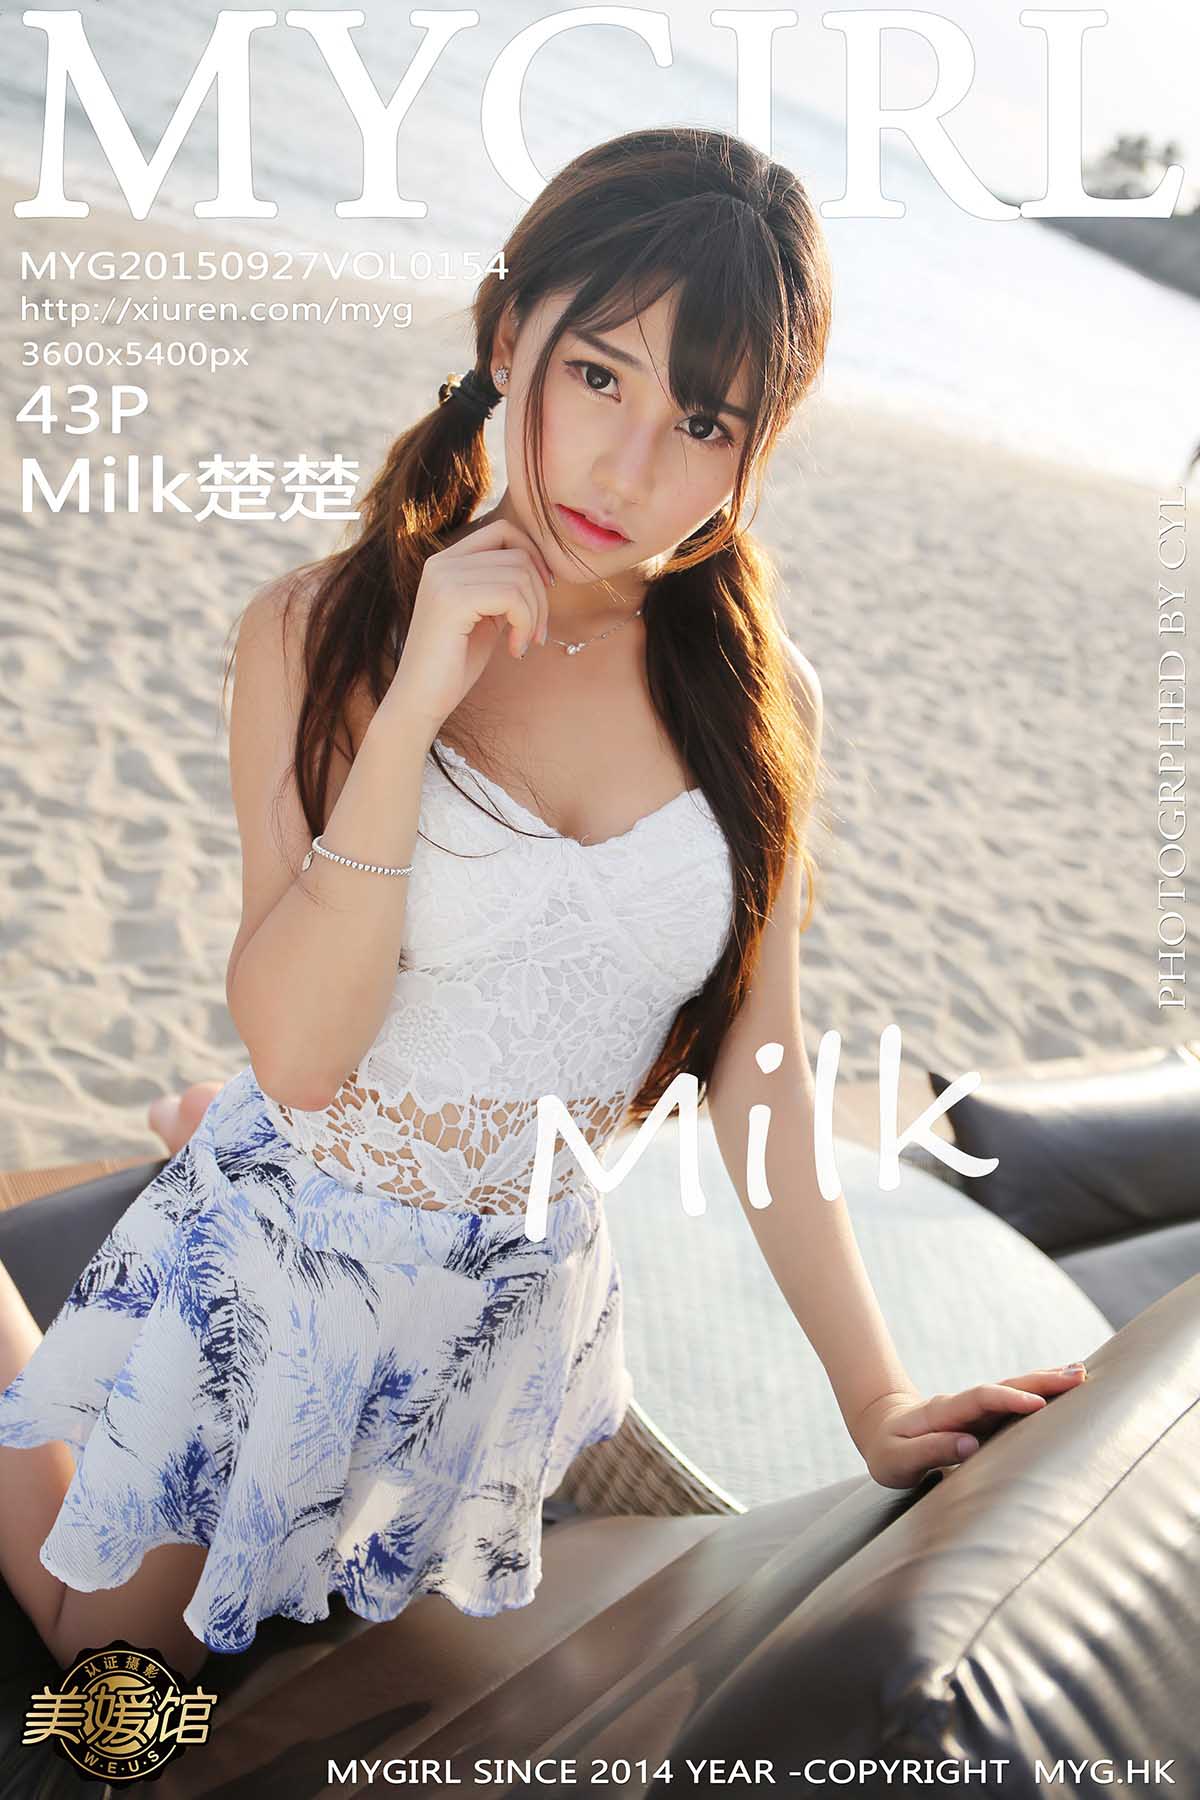 [MyGirl]美媛馆新特刊 2015-09-27 Vol.154 Milk楚楚